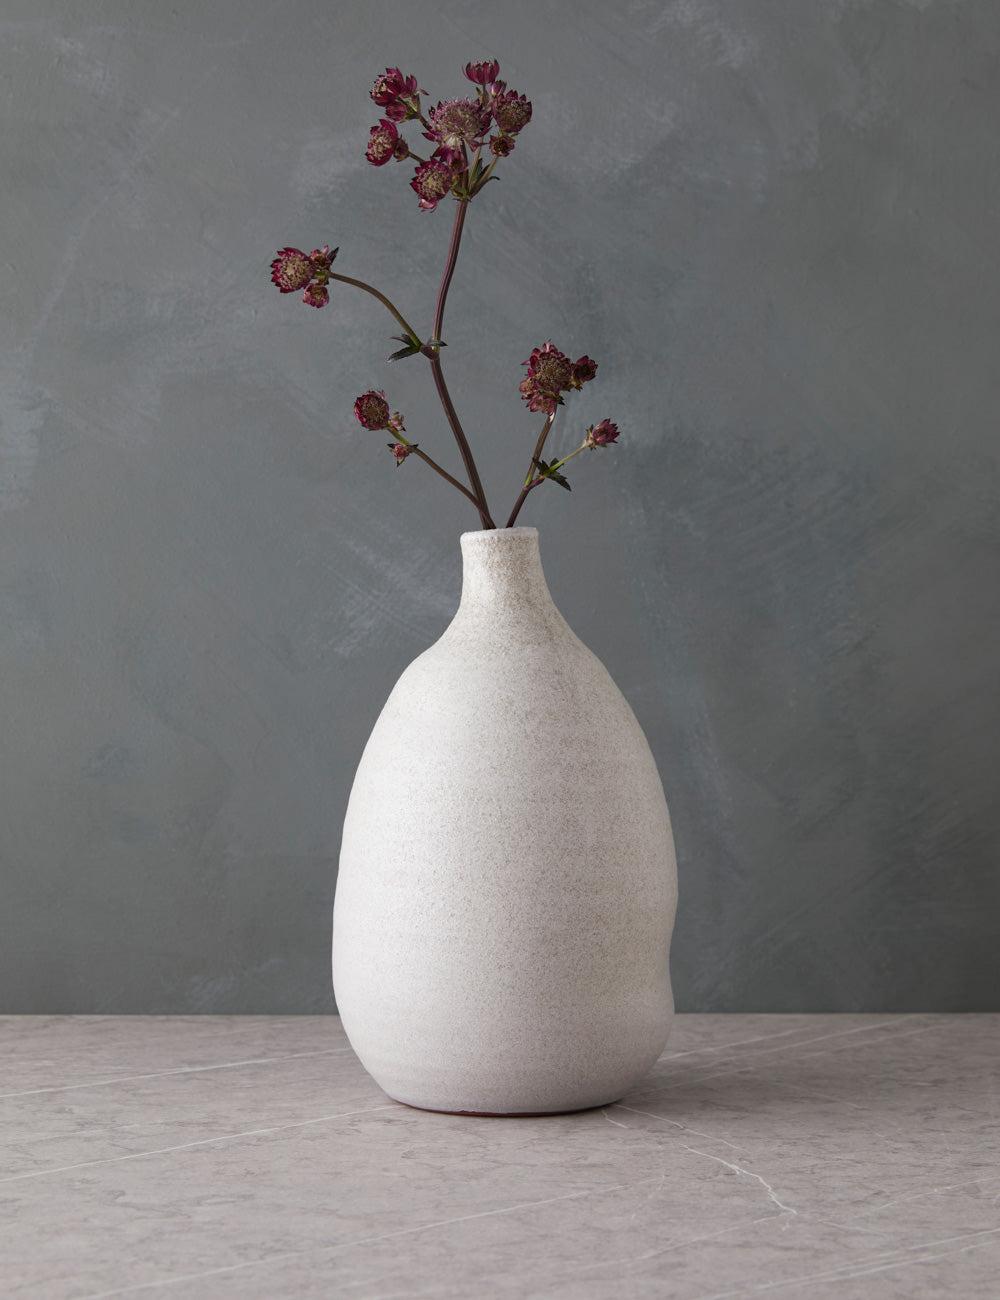 Distressed Cream Ceramic Bouquet Vase 7.28" x 11.81"